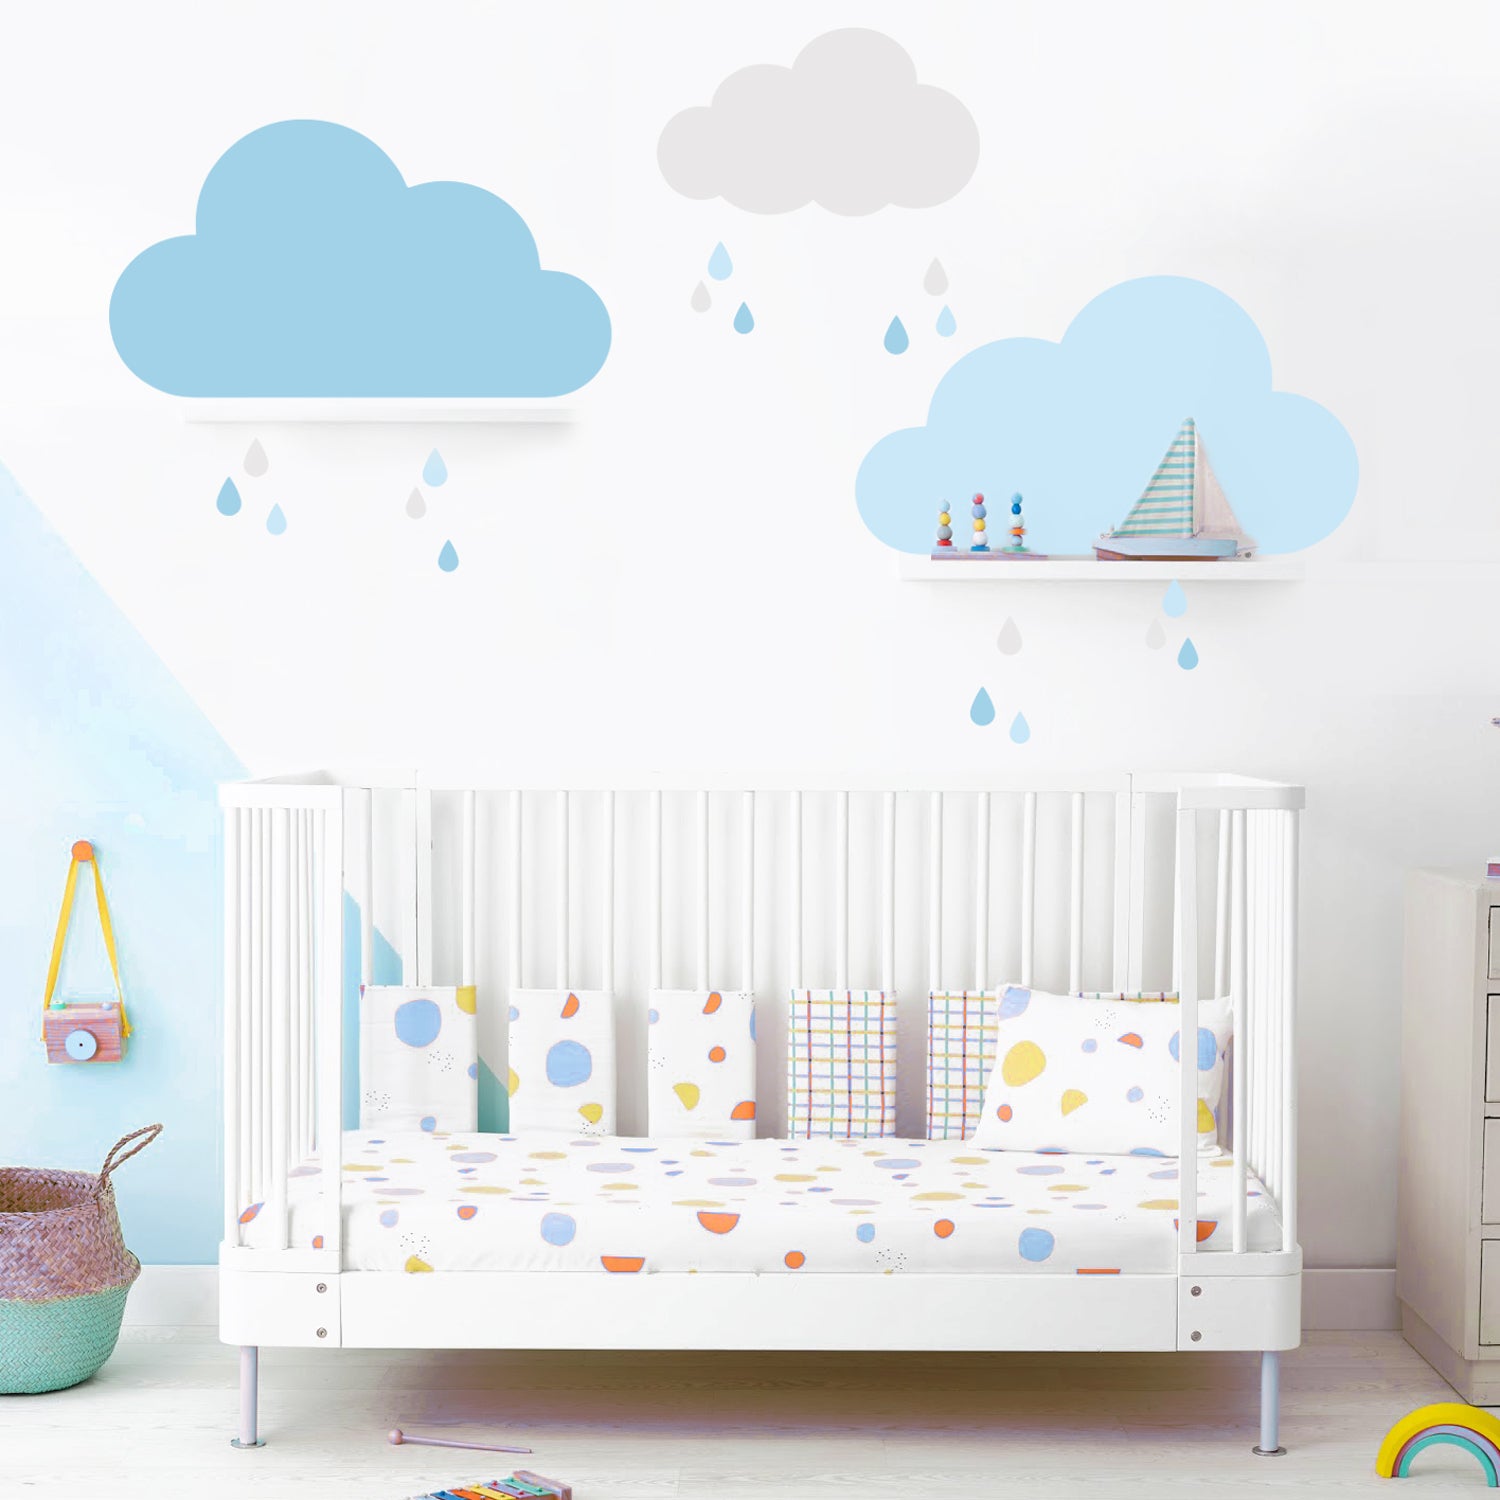 Adesivos de Parede de Nuvens e Gotas Azul e Cinza Decoração de Bebê SONHOS DE NINAR